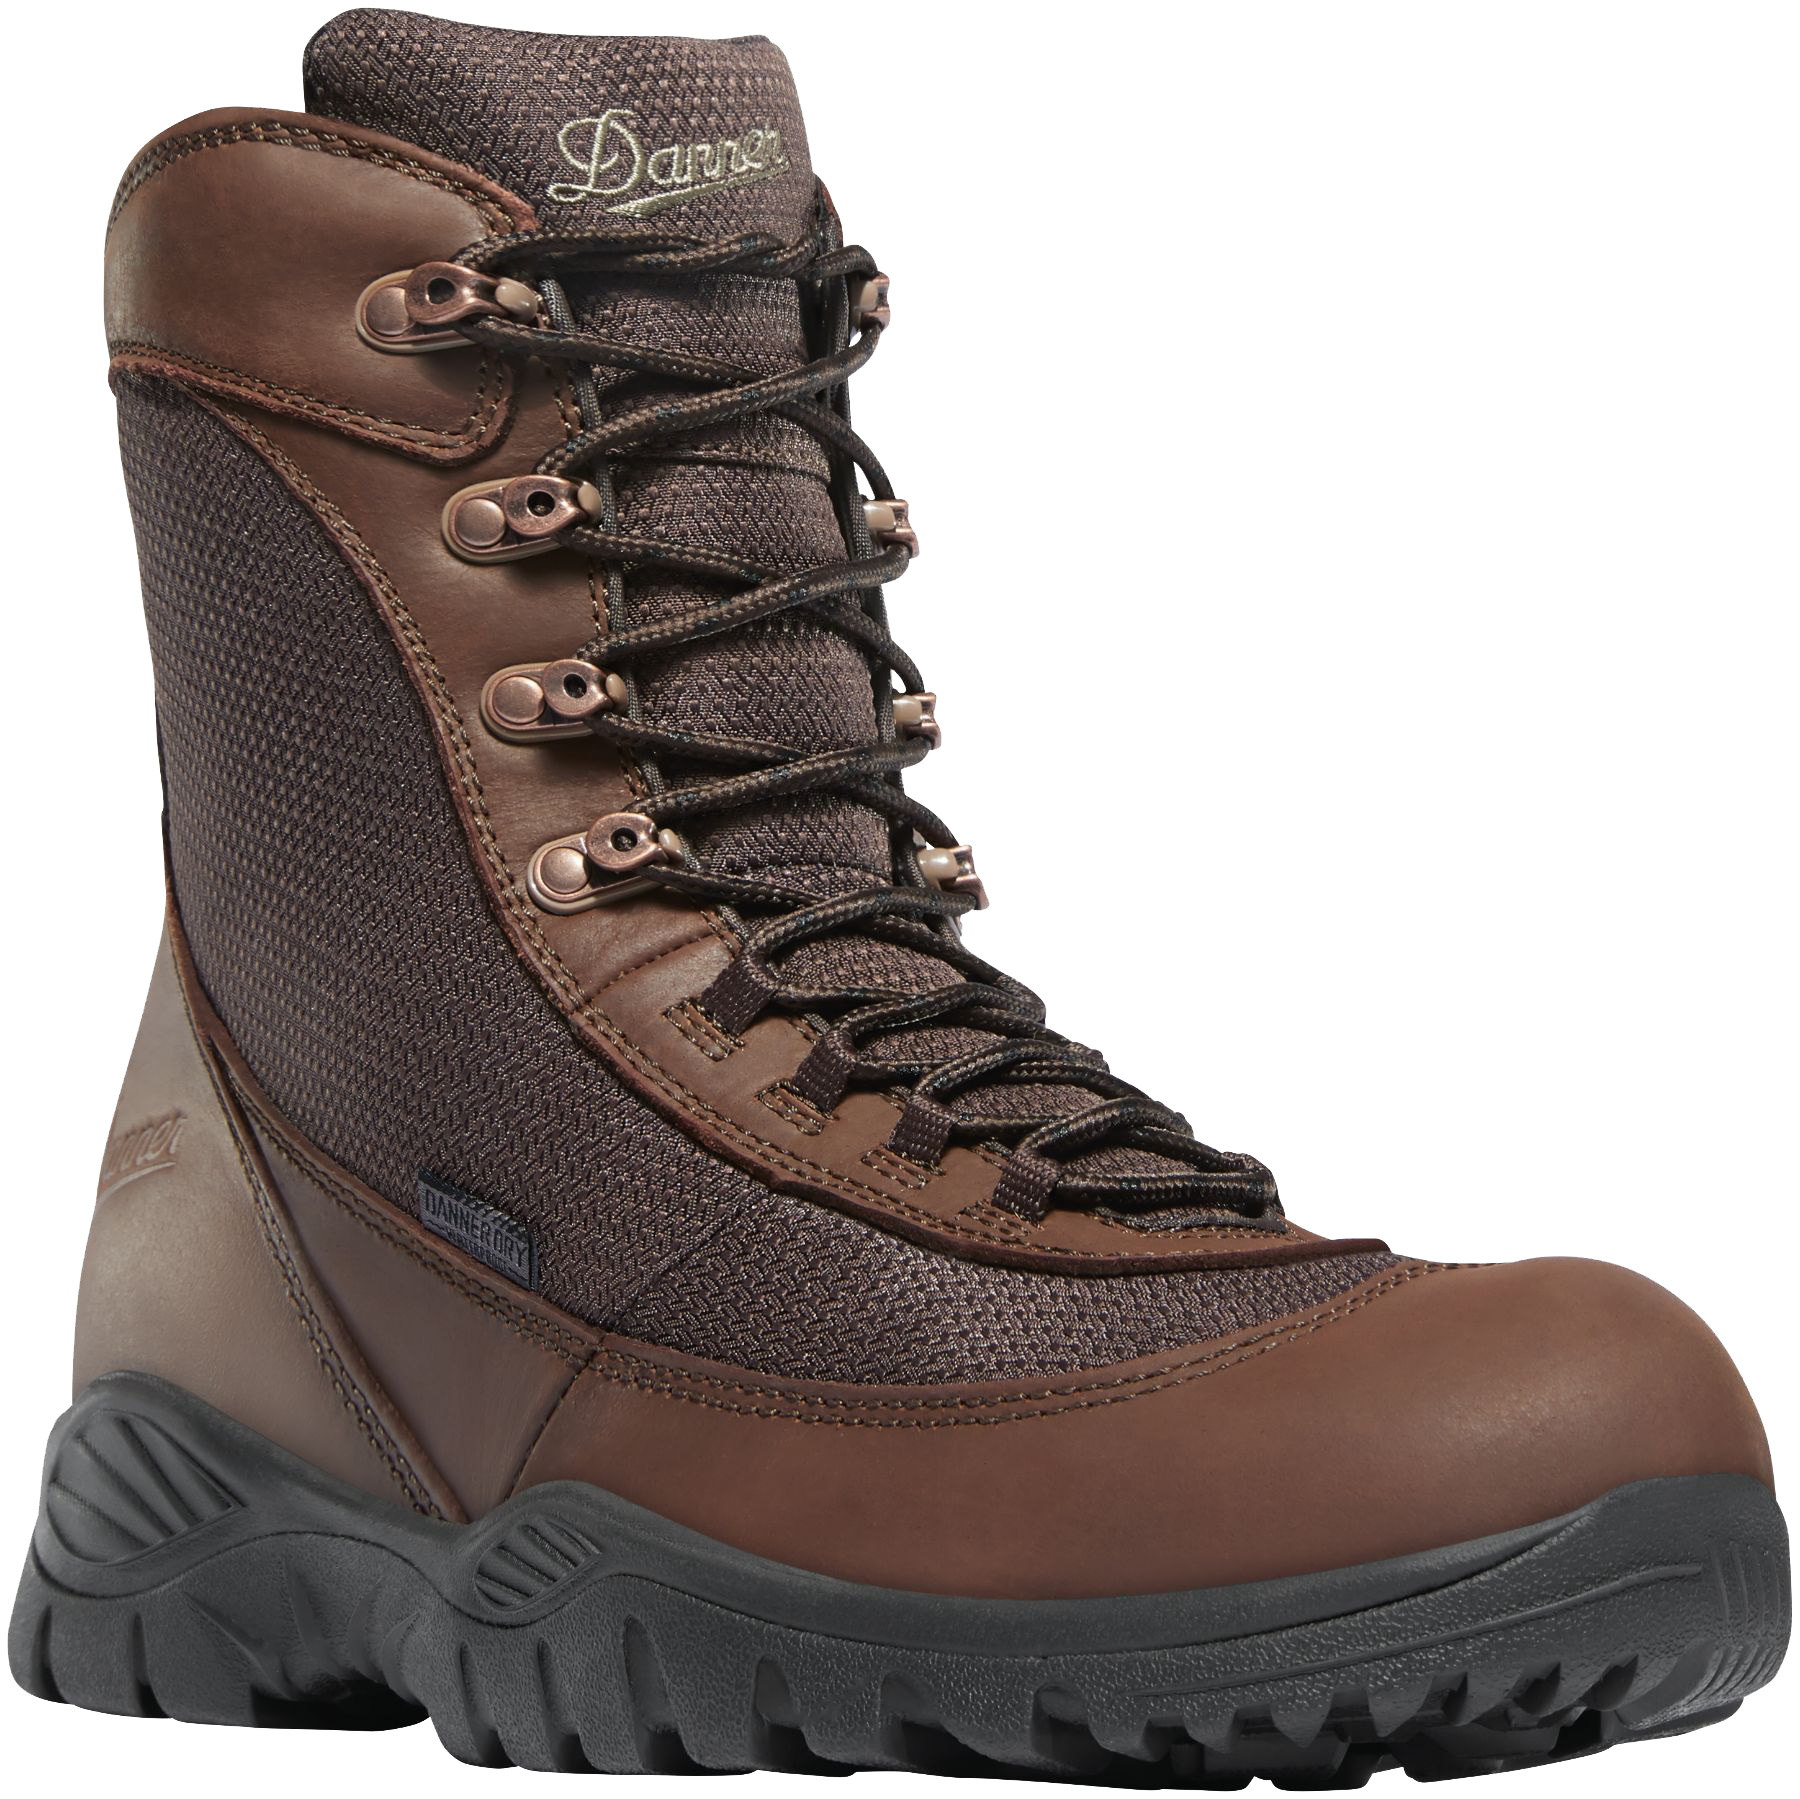 Danner Men's Element 8in Waterproof Hunting Boots - Brown 9 -  47130-9EE